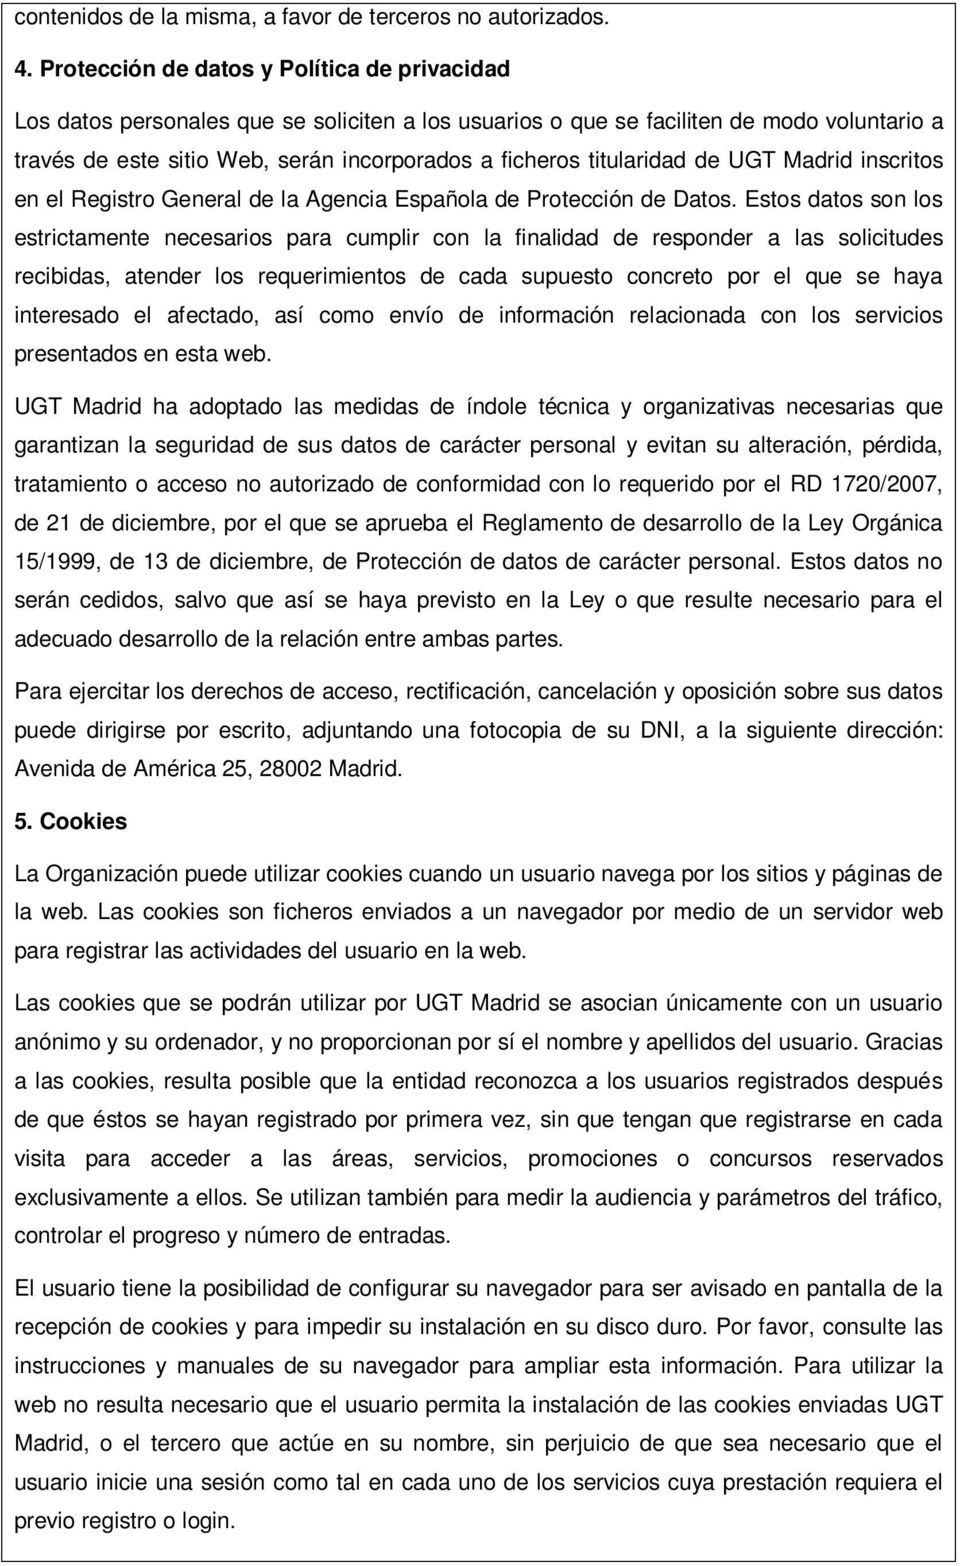 titularidad de UGT Madrid inscritos en el Registro General de la Agencia Española de Protección de Datos.